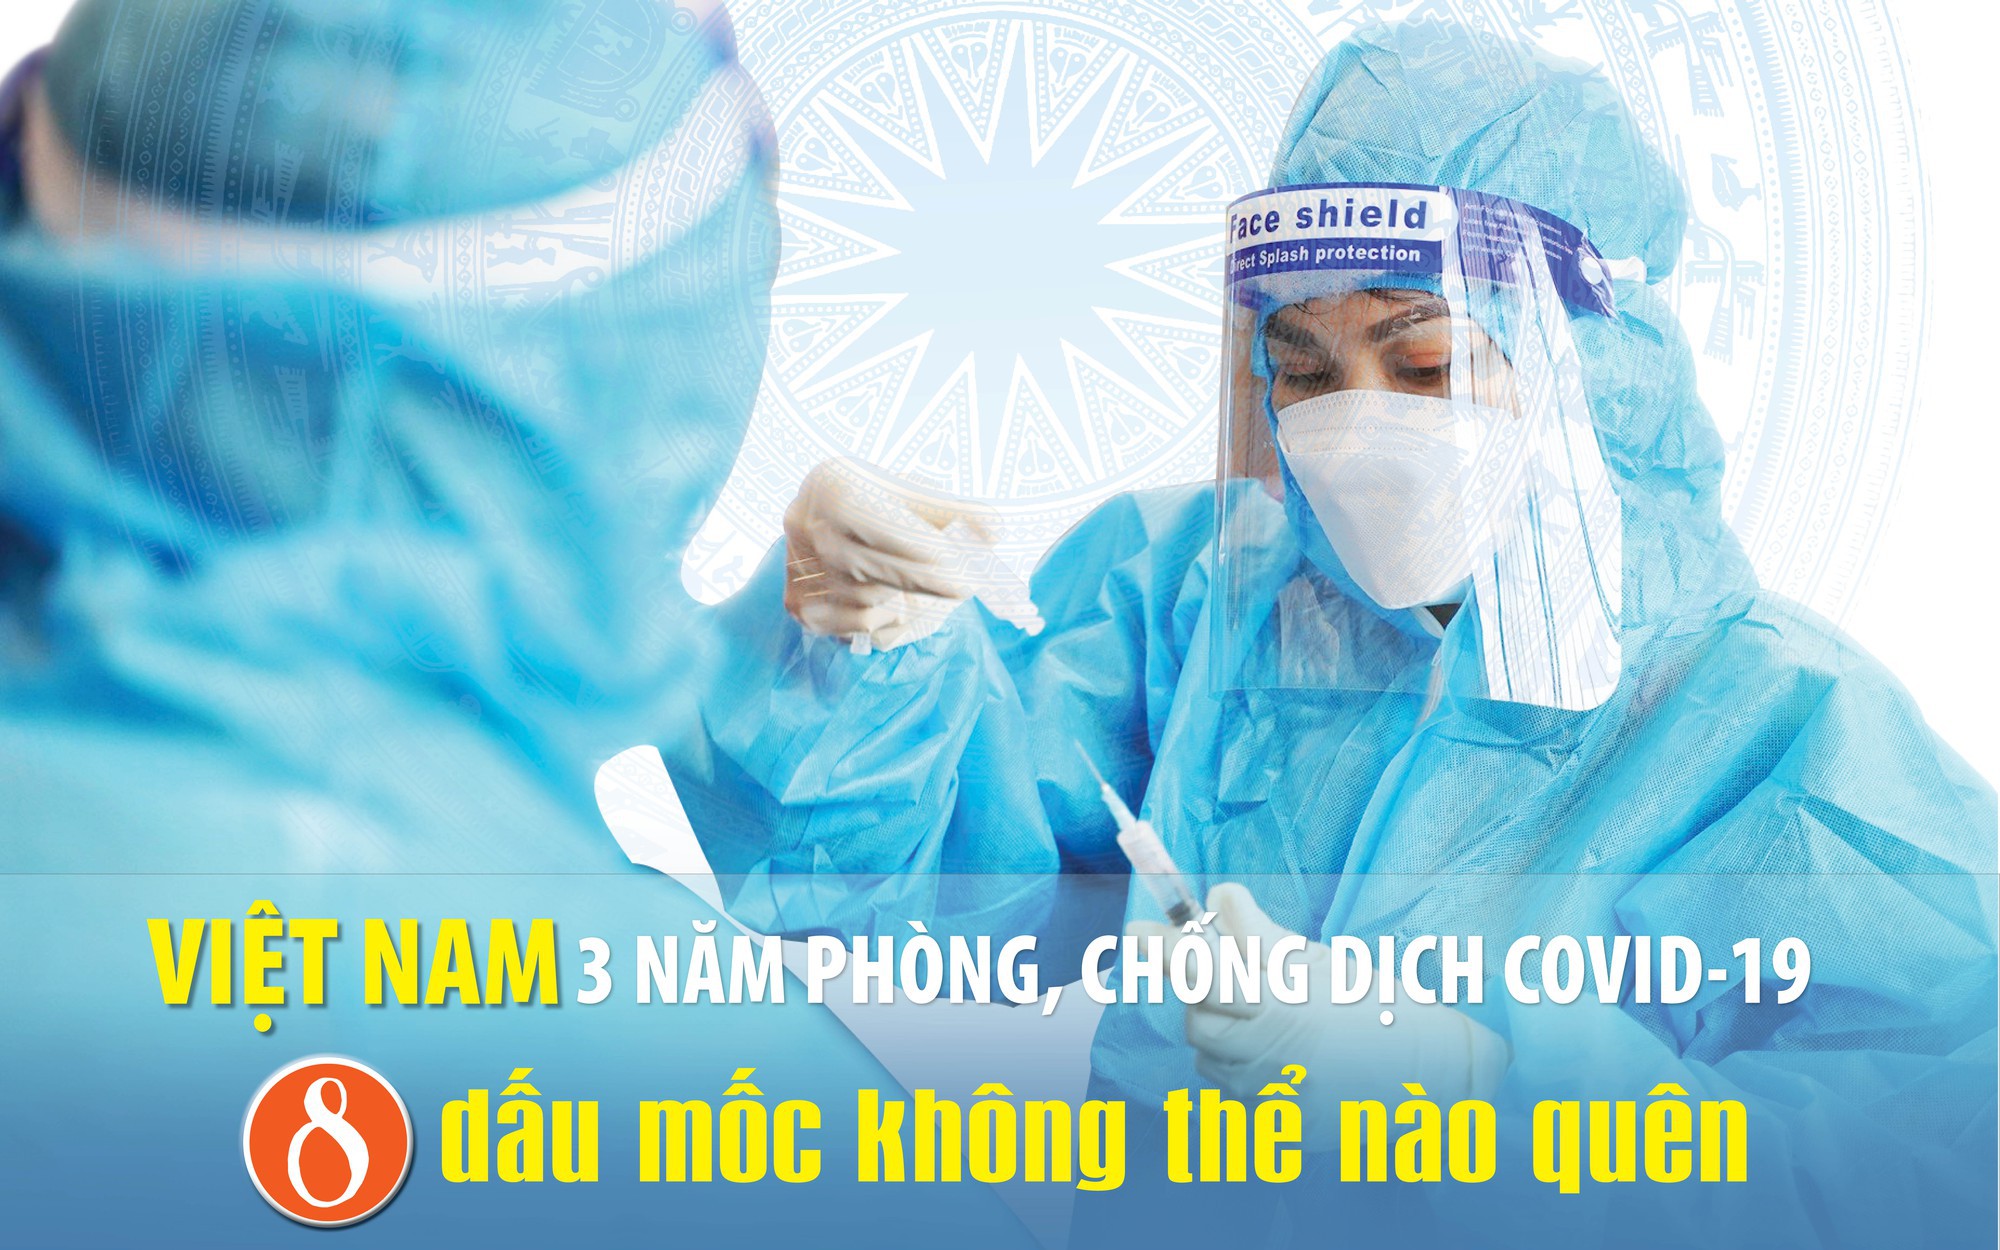 [Infographic] 8 dấu mốc không thể nào quên suốt 3 năm Việt Nam chống dịch COVID-19